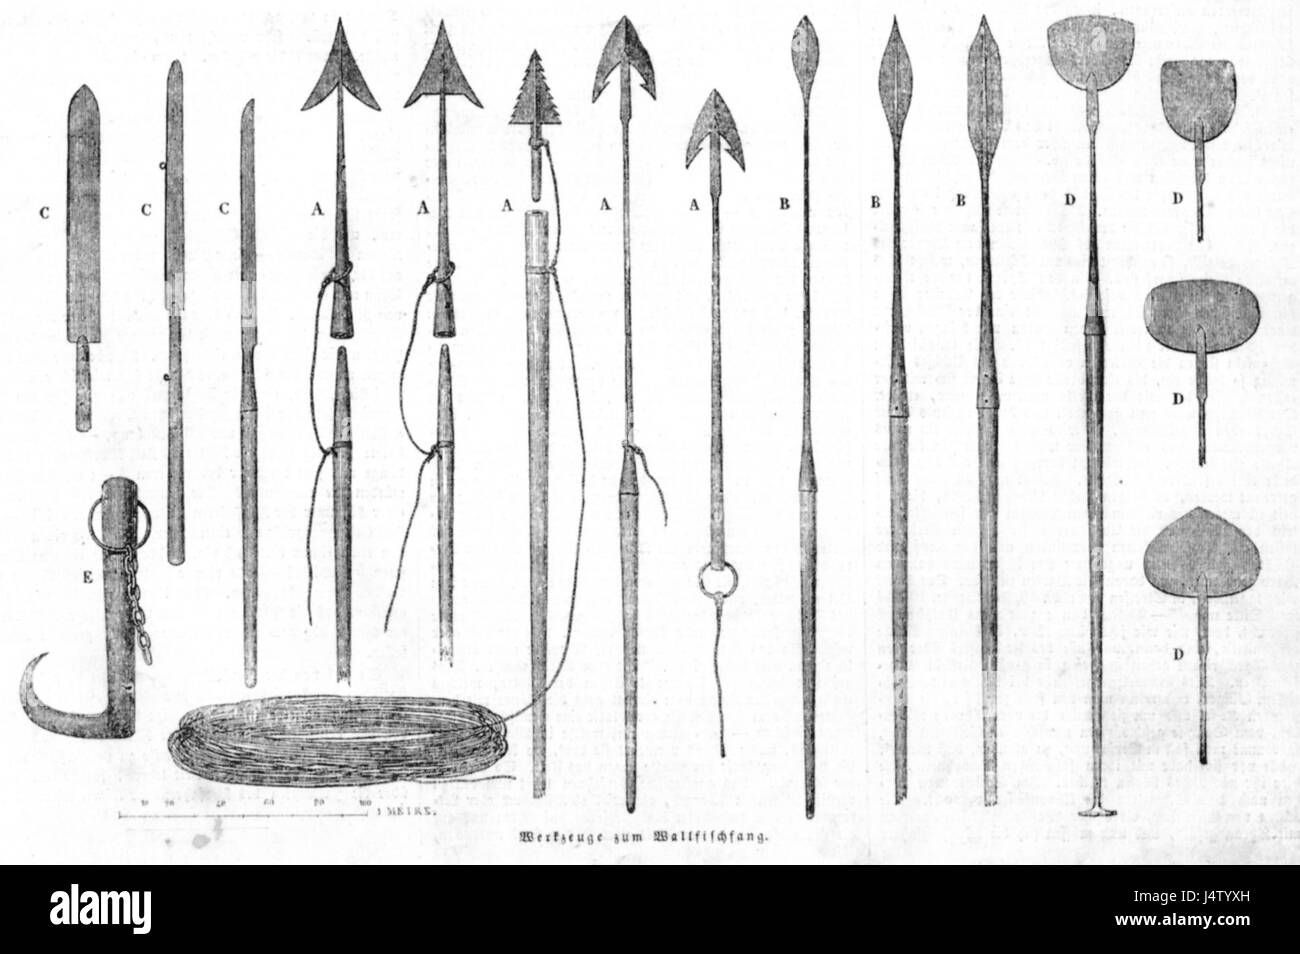 Werkzeuge zum Walfischfang (1850) Stock Photo